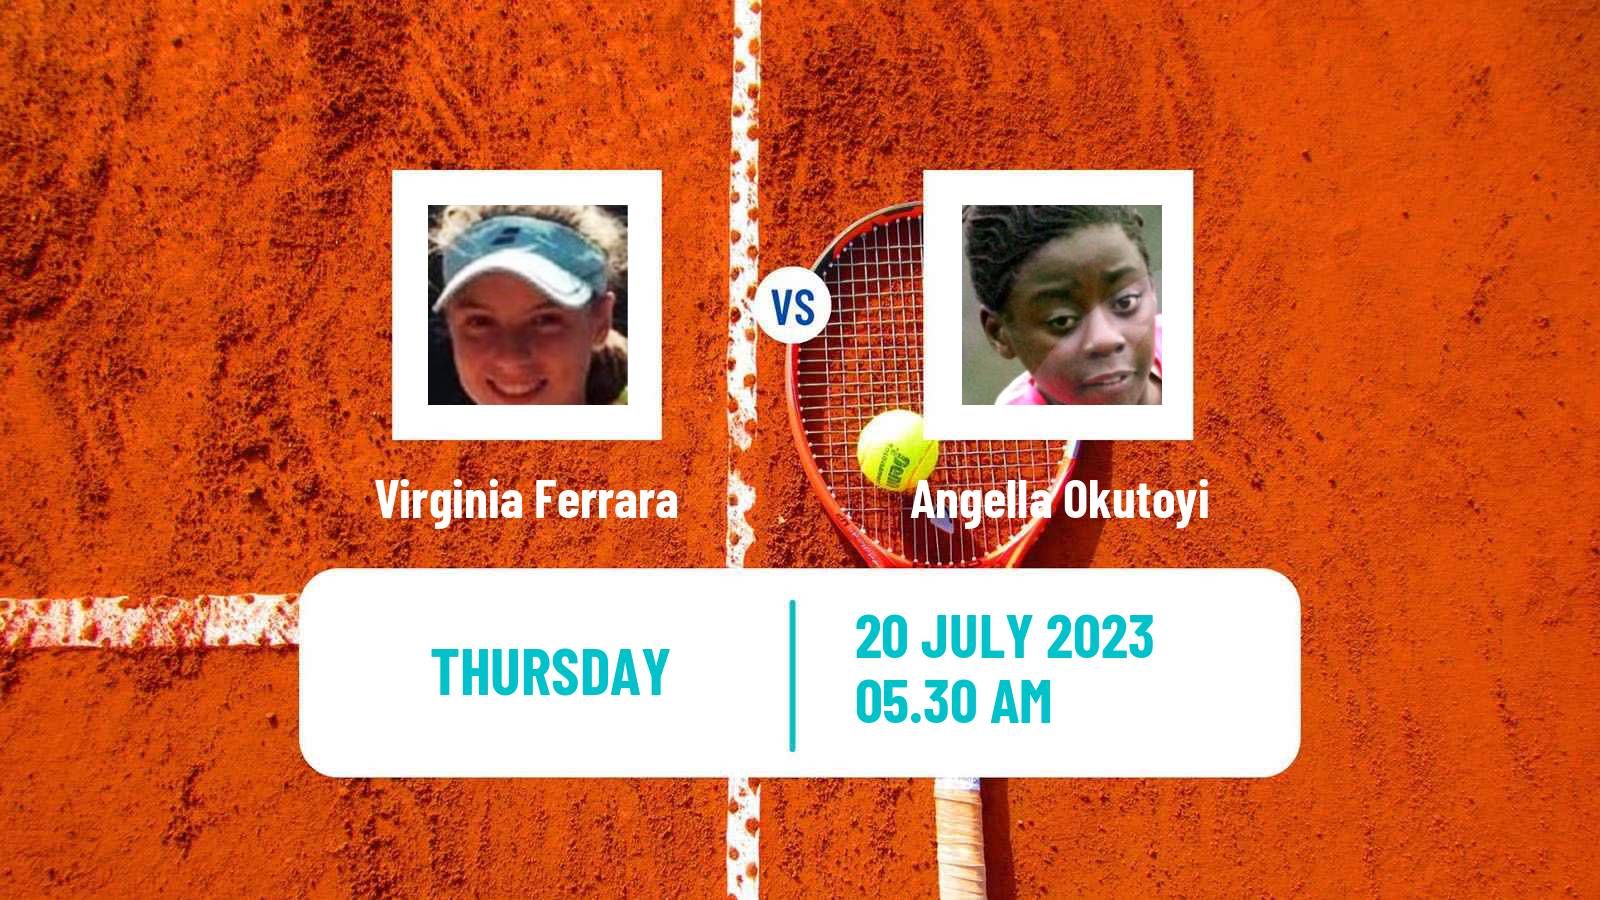 Tennis ITF W15 Monastir 24 Women Virginia Ferrara - Angella Okutoyi